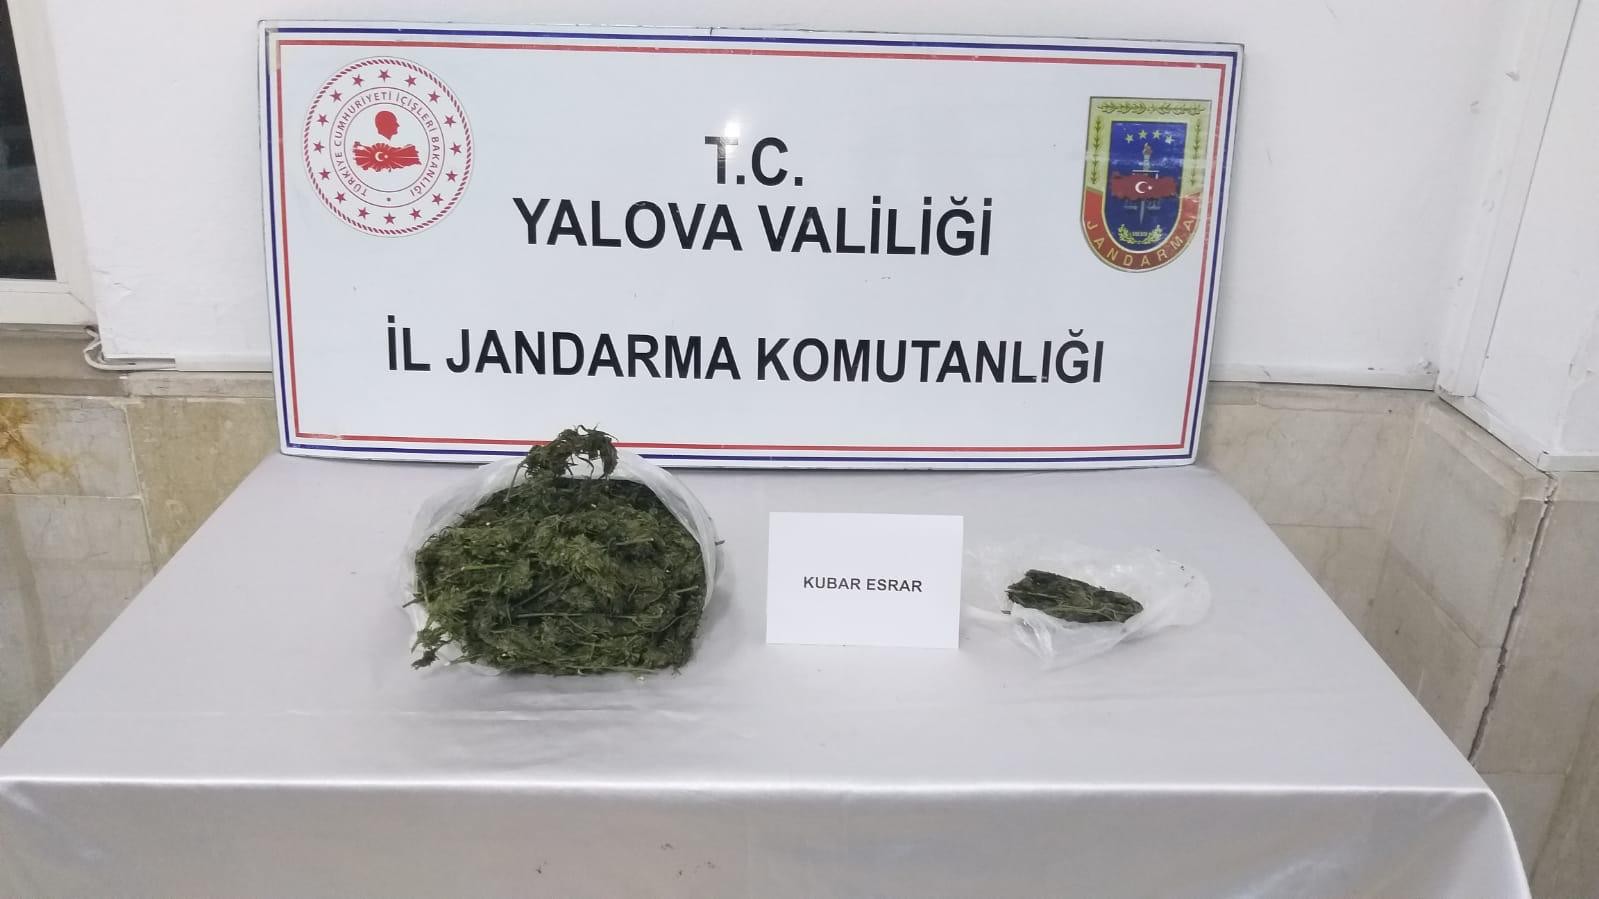 Yalova’da bir kişinin üzerinden 980 gram esrar çıktı #yalova